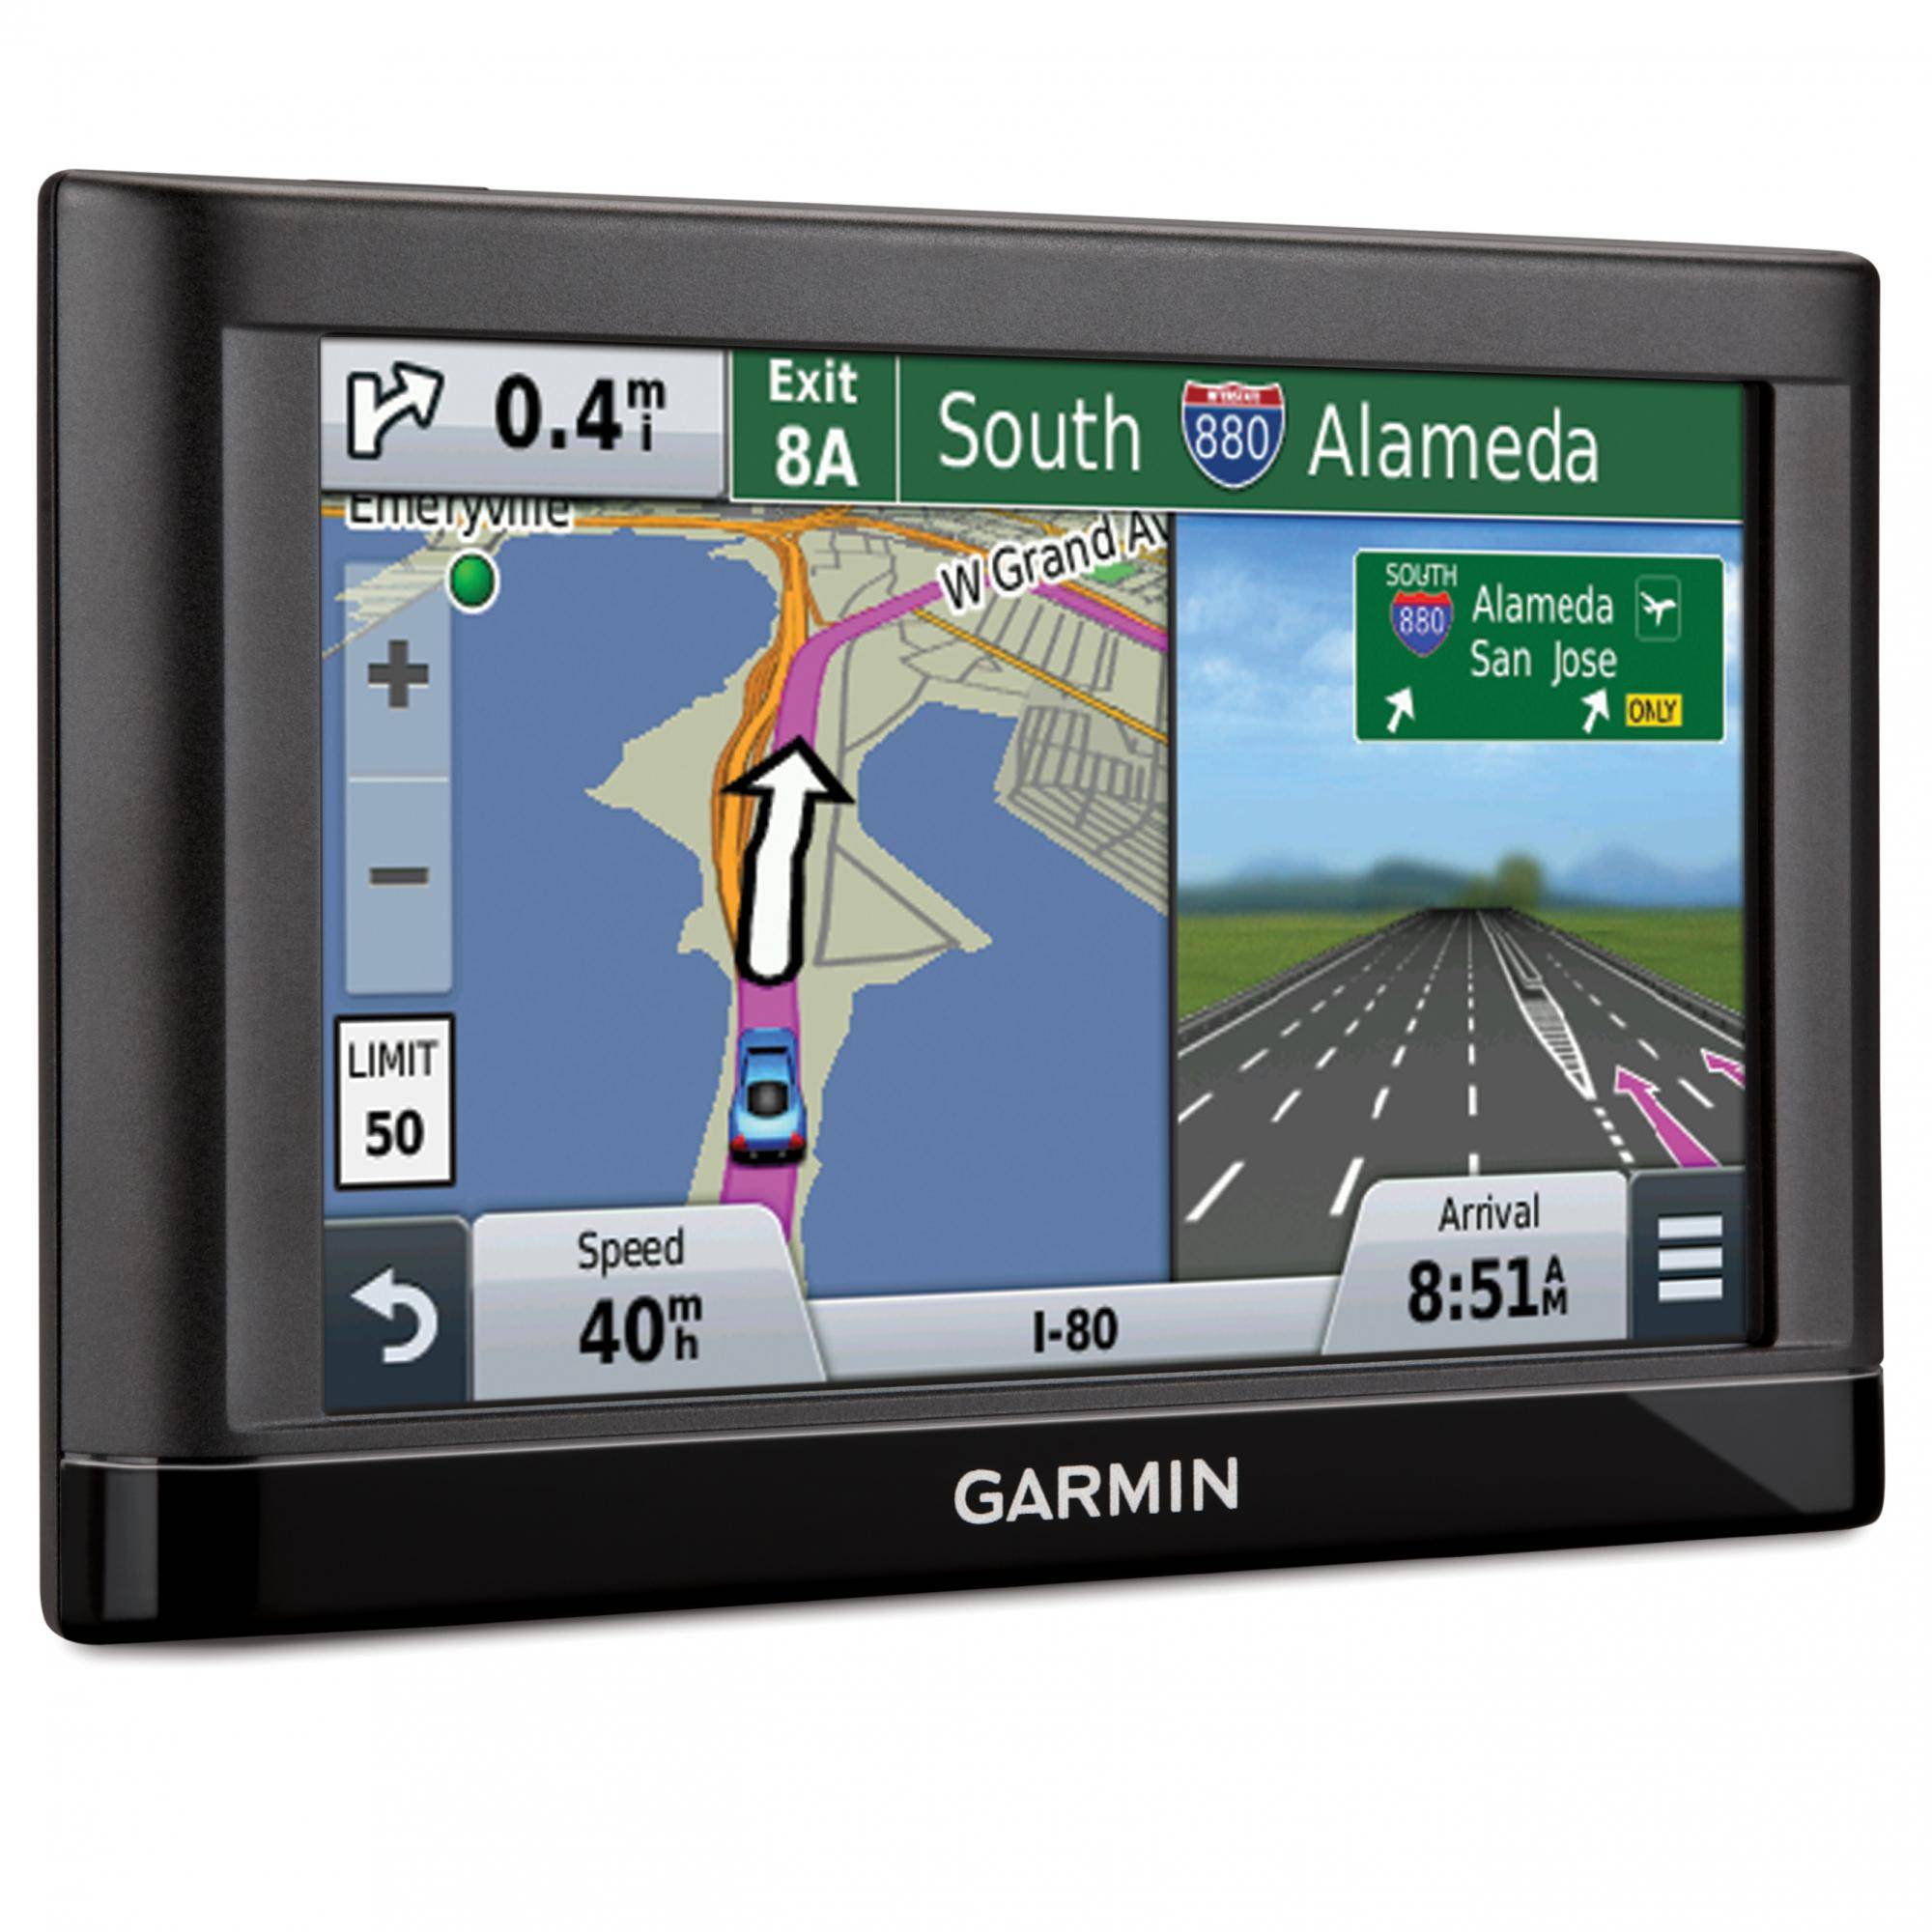  Navigatie GPS Garmin Nuvi 56LM, harta Full Europe + Update gratuit al hartilor pe viata 